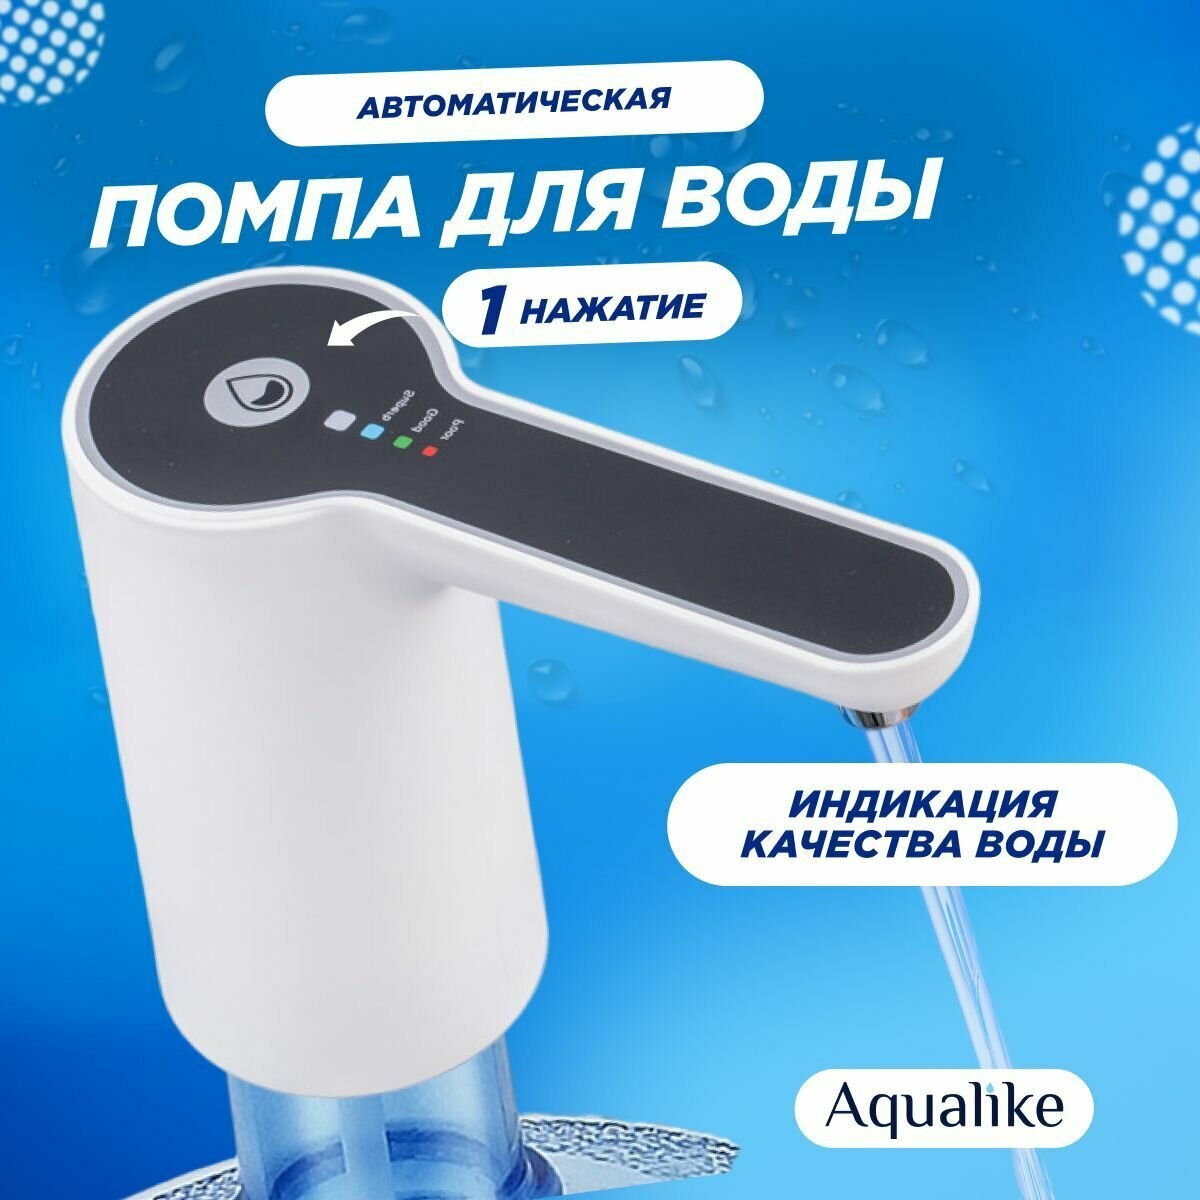 Помпа для воды электрическая Aqualike W1